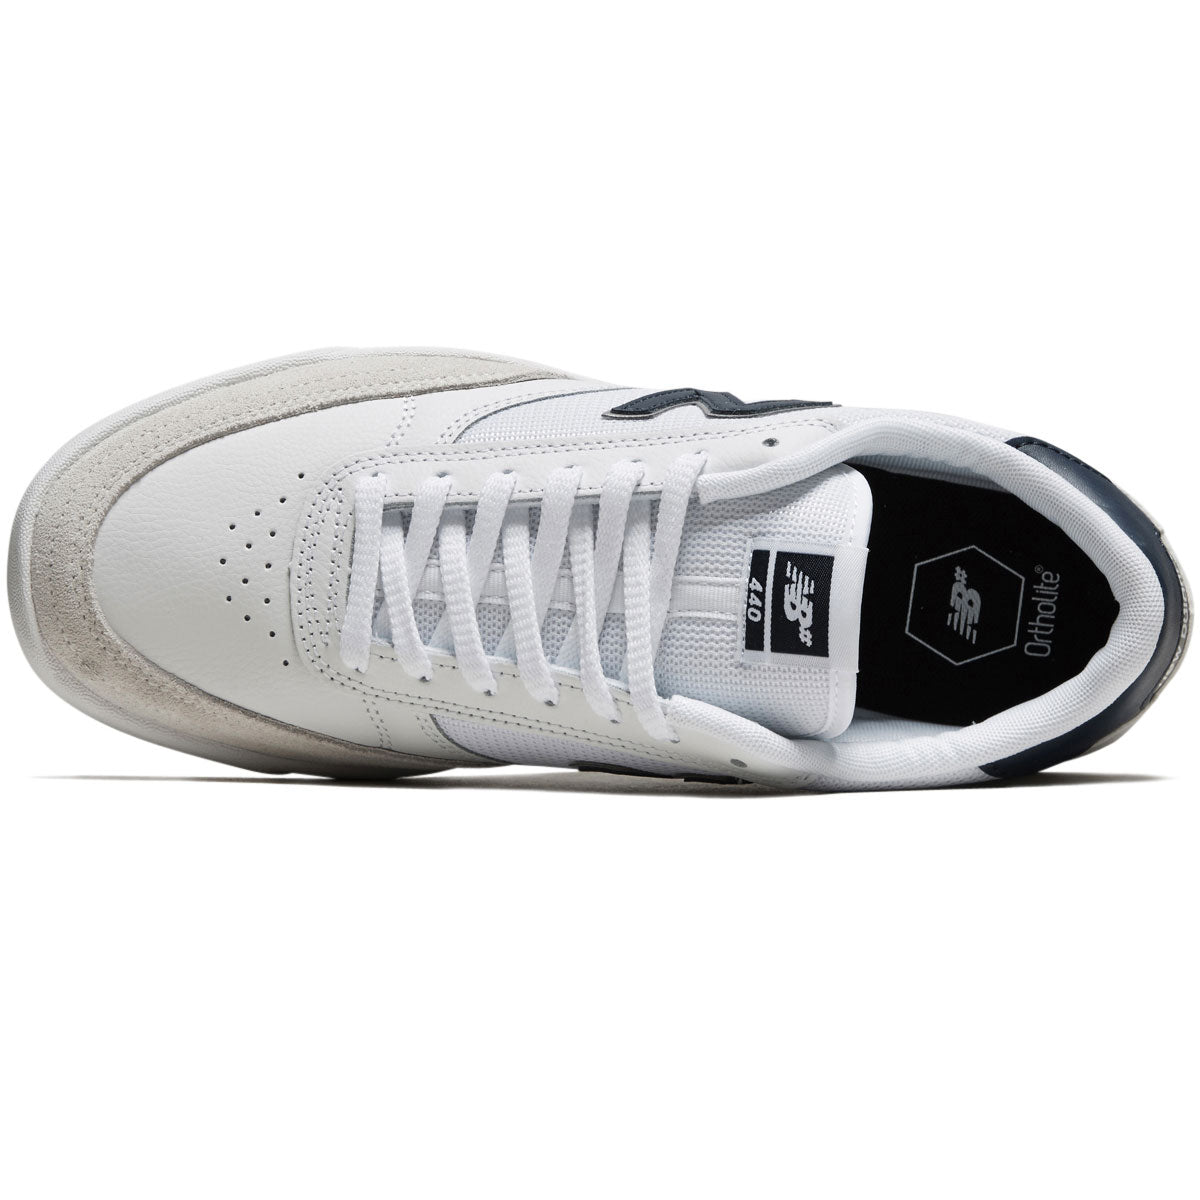 New Balance 440 Shoes - White/Navy/White image 3